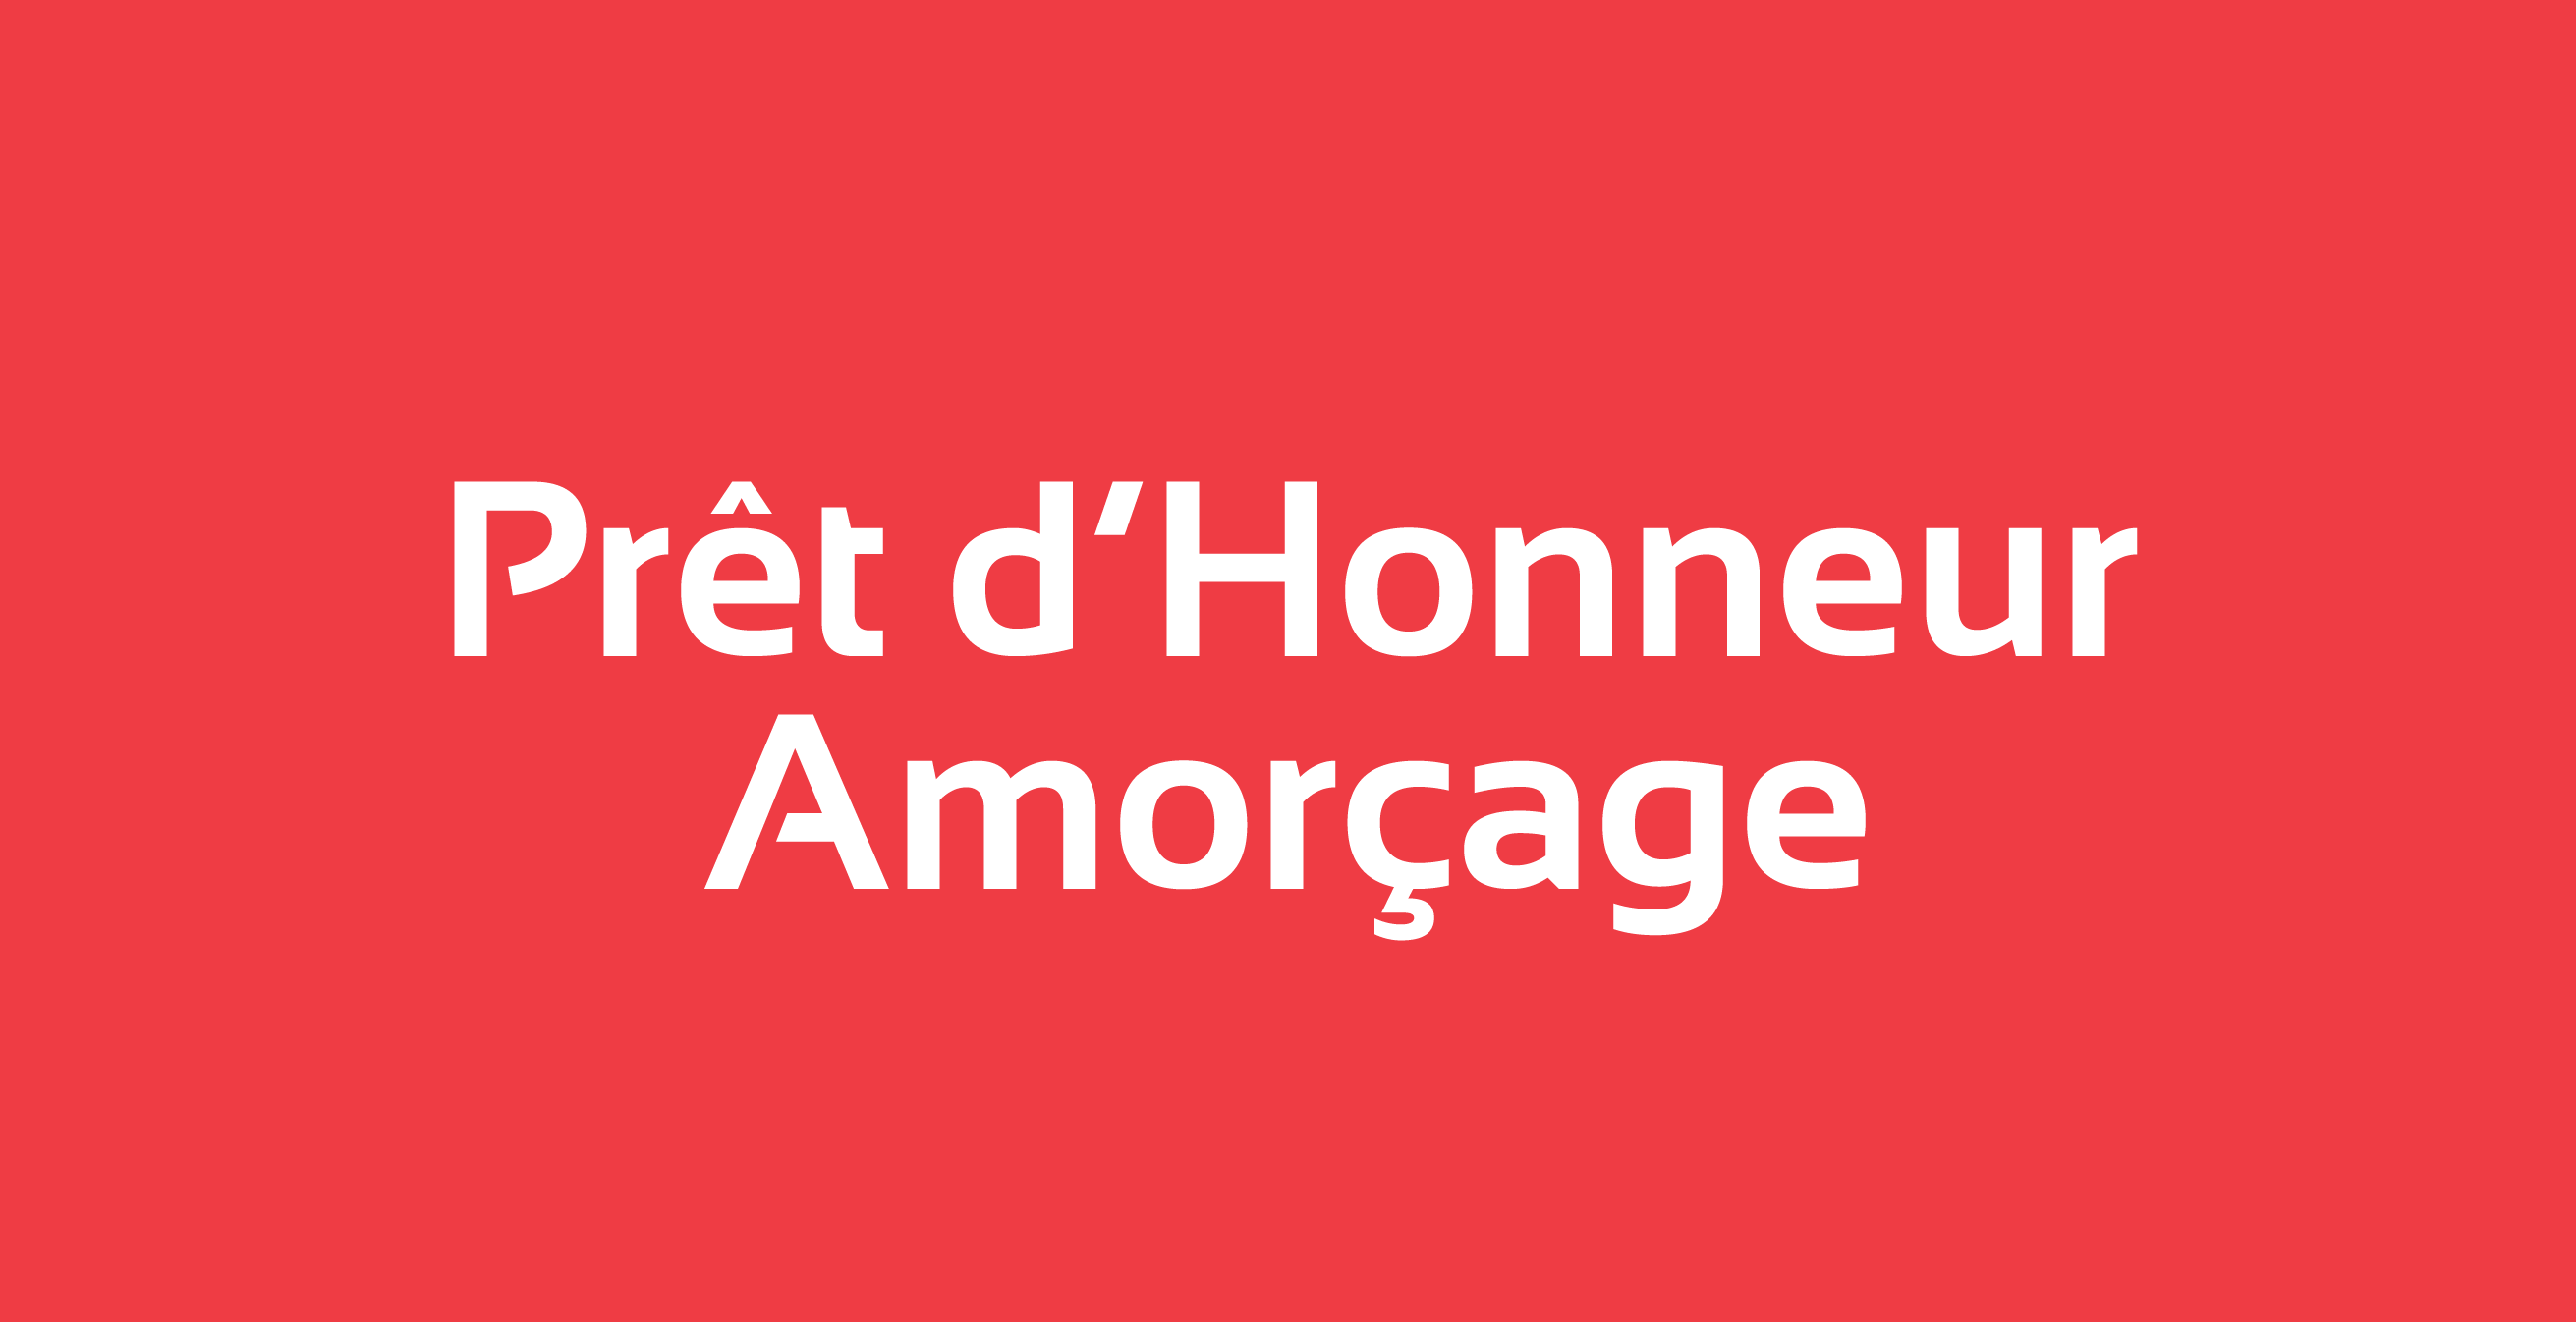 Pret_dHonneur_Amorcage_Site_2.png